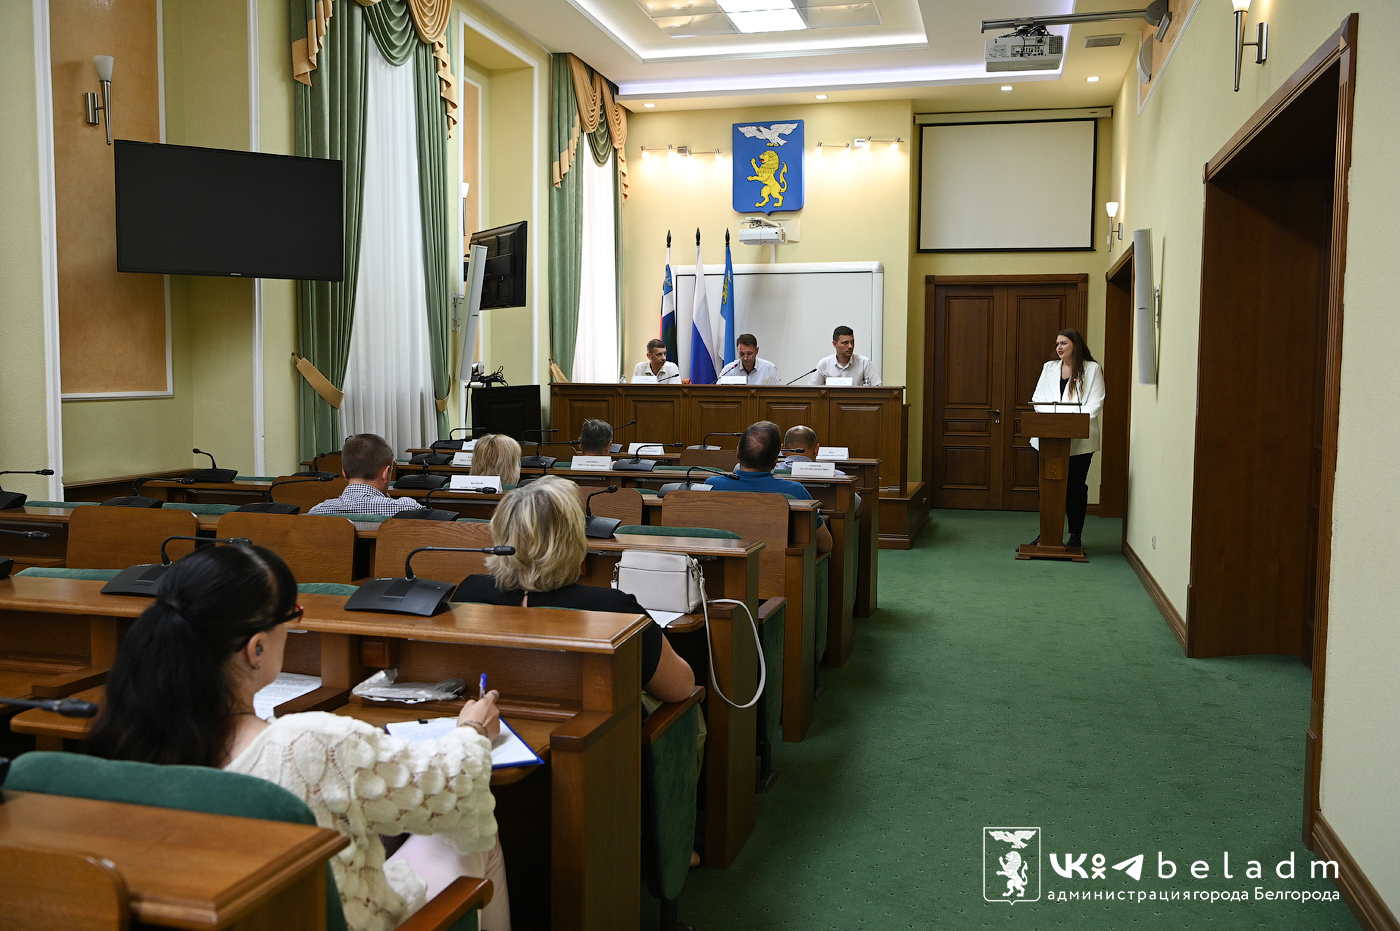 Сегодня состоялось заседание комиссии по координации работы по противодействию коррупции в органах местного самоуправления Белгорода.